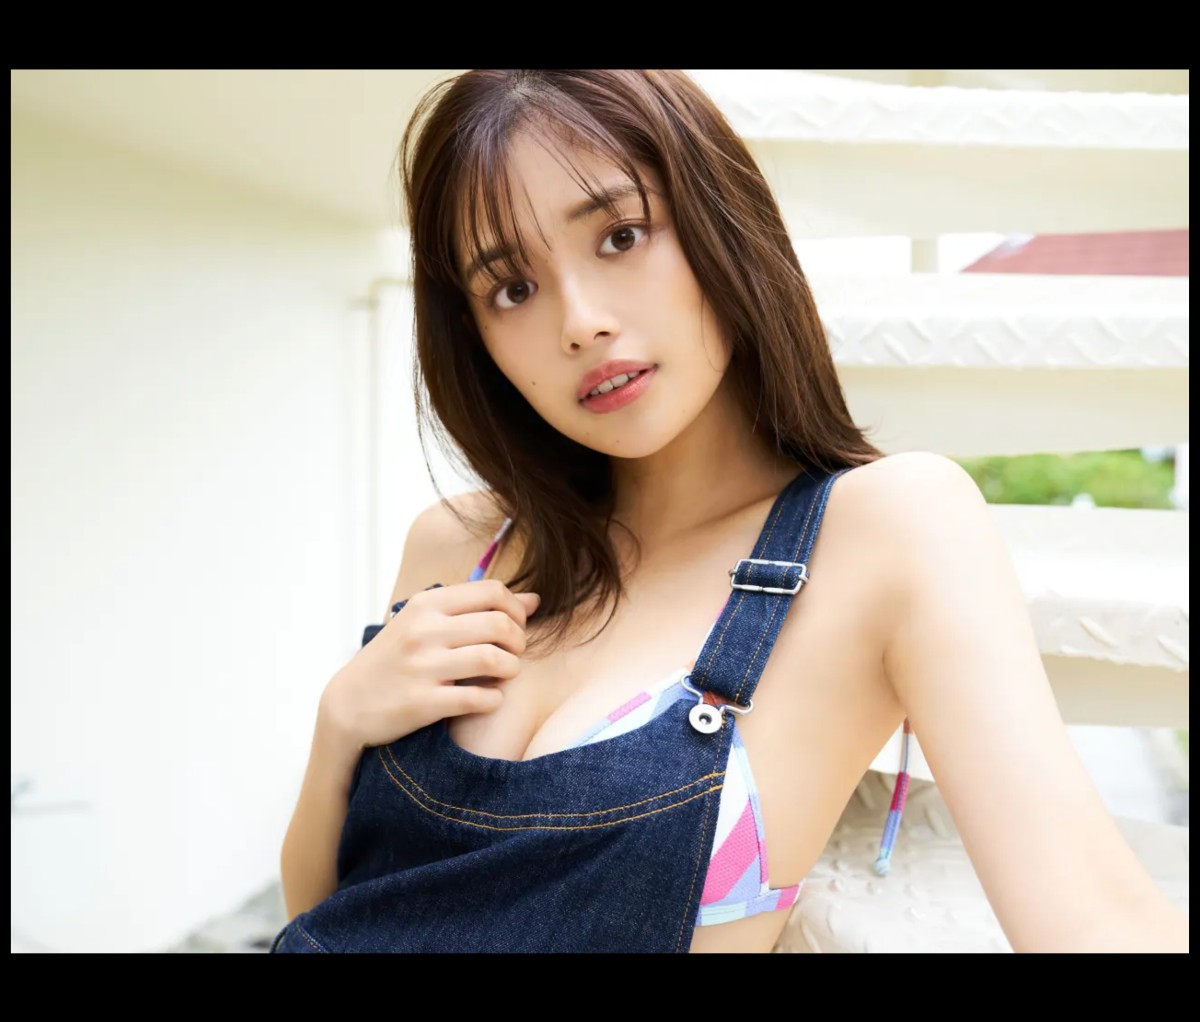 FRIDAYデジタル写真集 Hinami Mori 森日菜美 Seaside Girl Full Version 0057 0767521259.jpg